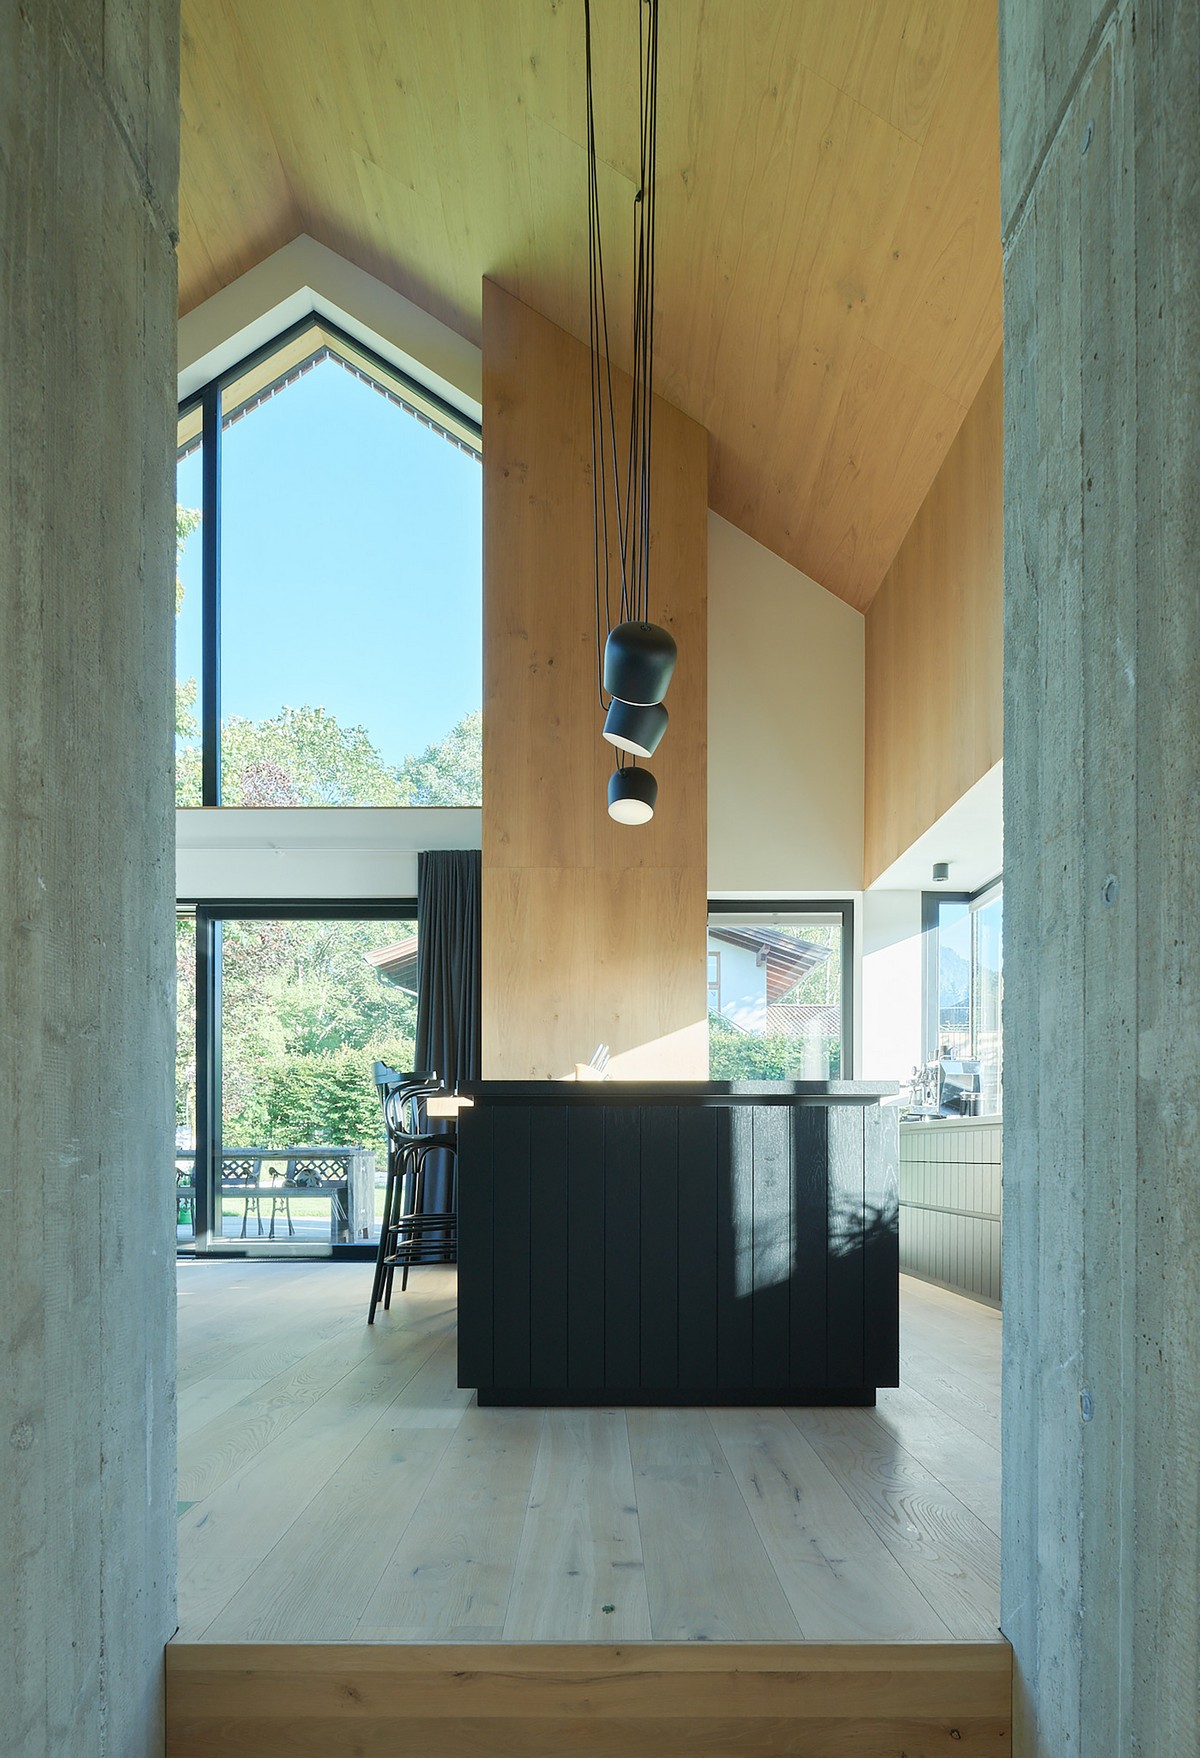 Деревянный дом контрастного минимализма в Австрии который, связь, действует, стремление, отдыха, контрастного, между, минимализма, крыше, элемент, бетонное, чёрной, стали, отражает, концепции, сельской, открытой, Прилегающая, планировки, создавая